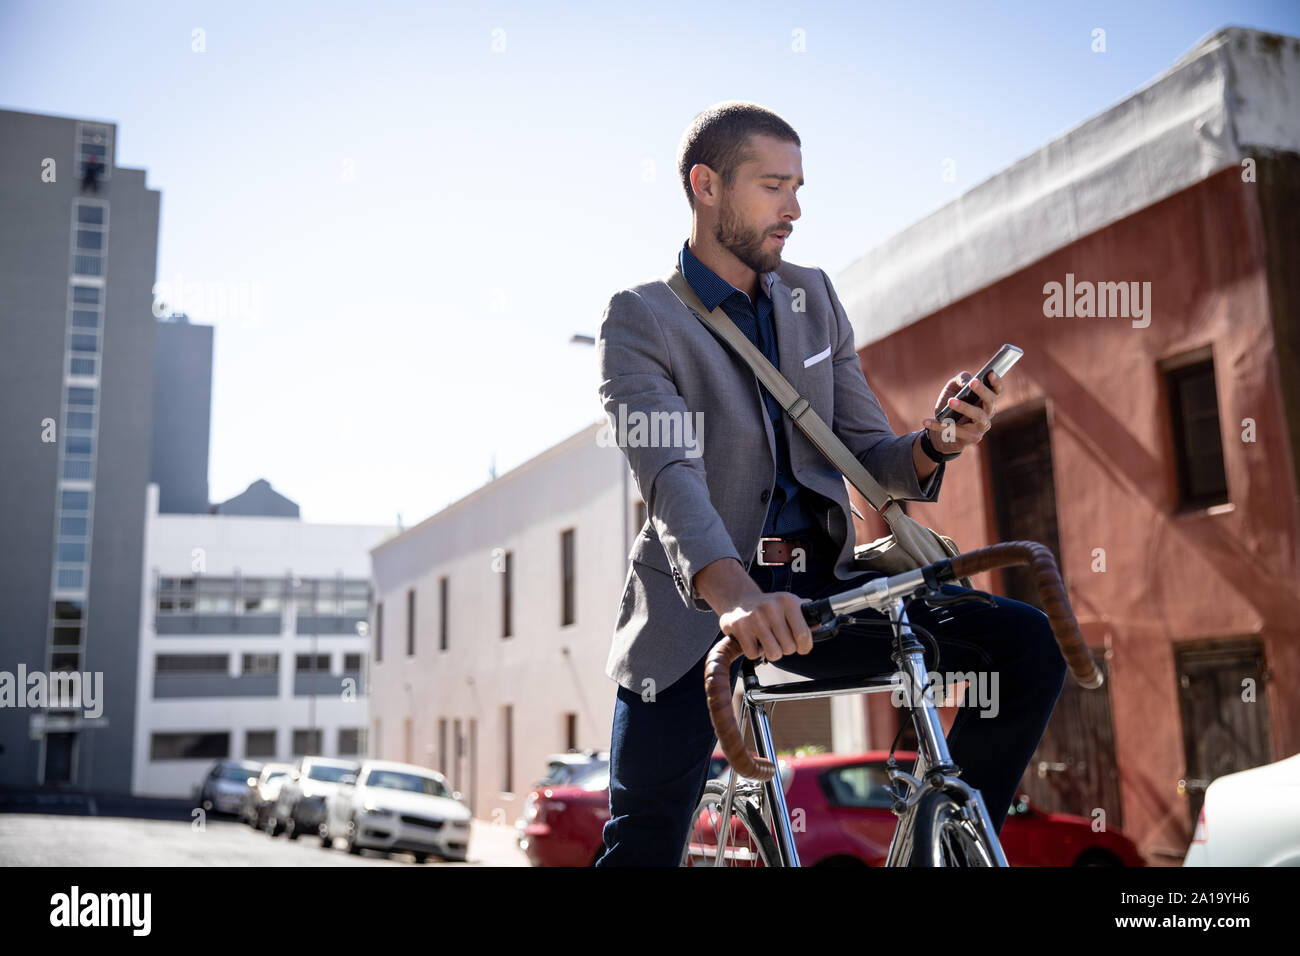 Young man using smartphone et assis sur le vélo Banque D'Images